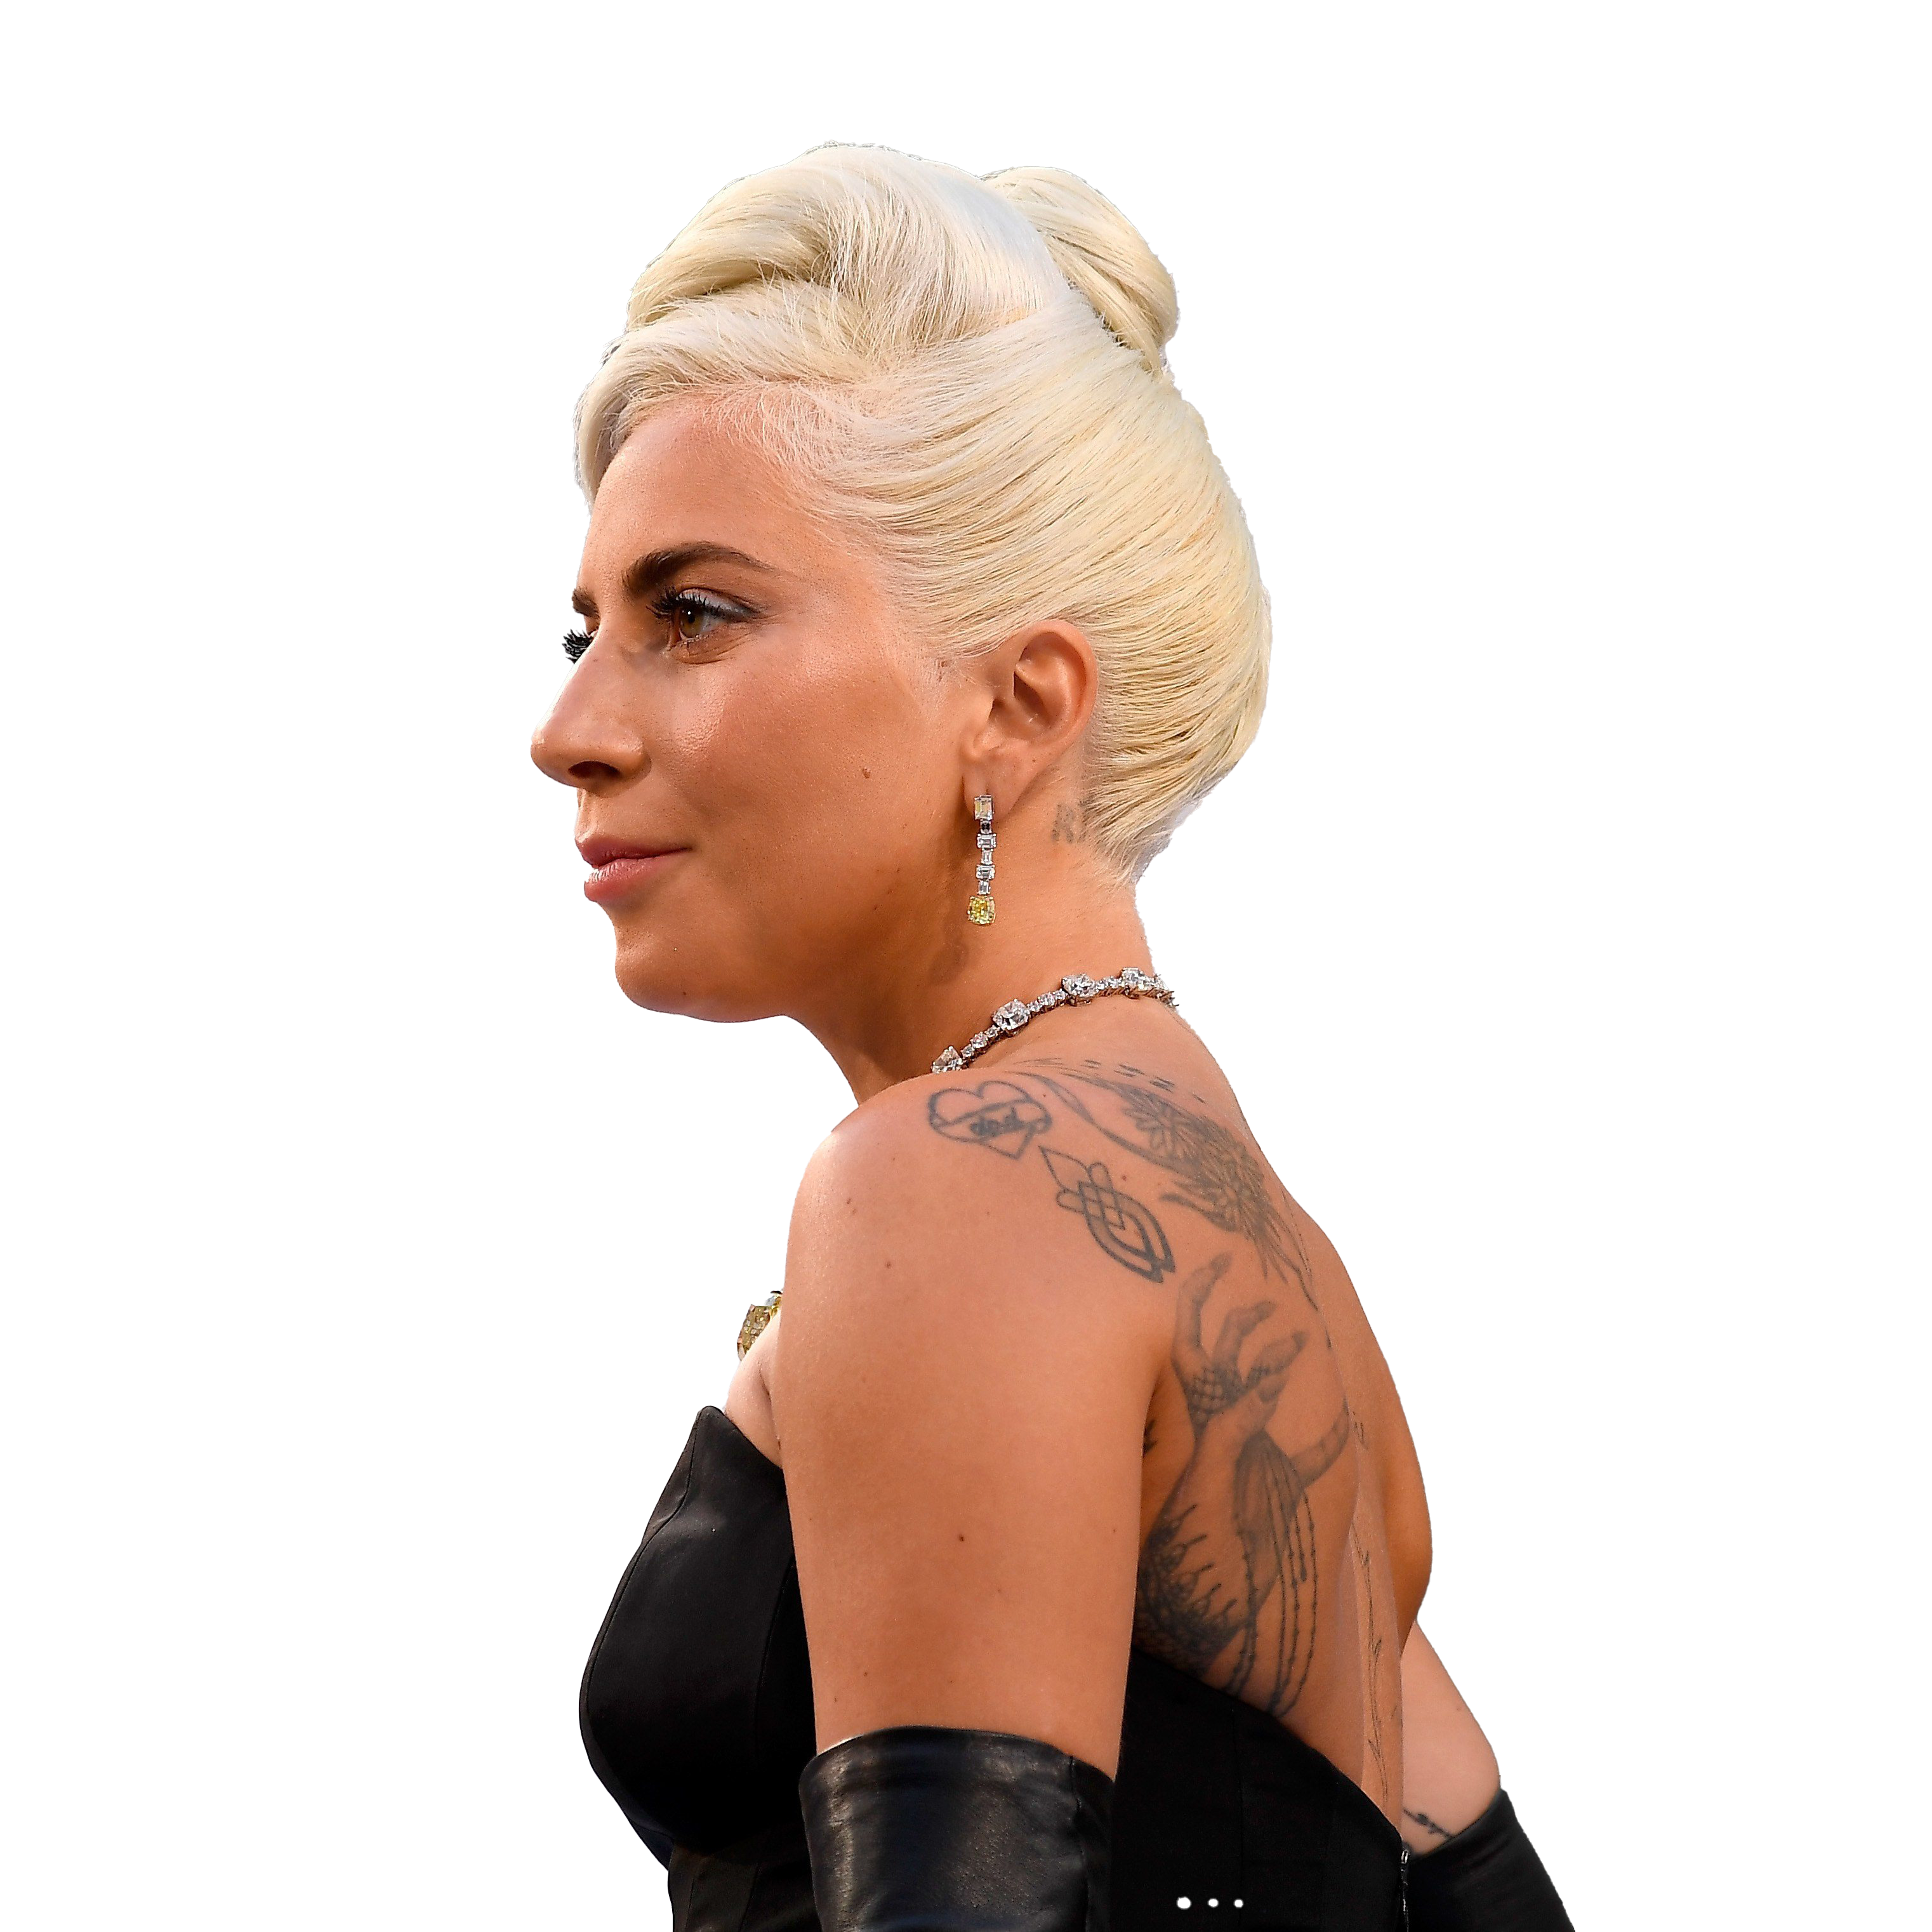 Singer Lady Gaga Free PNG Image